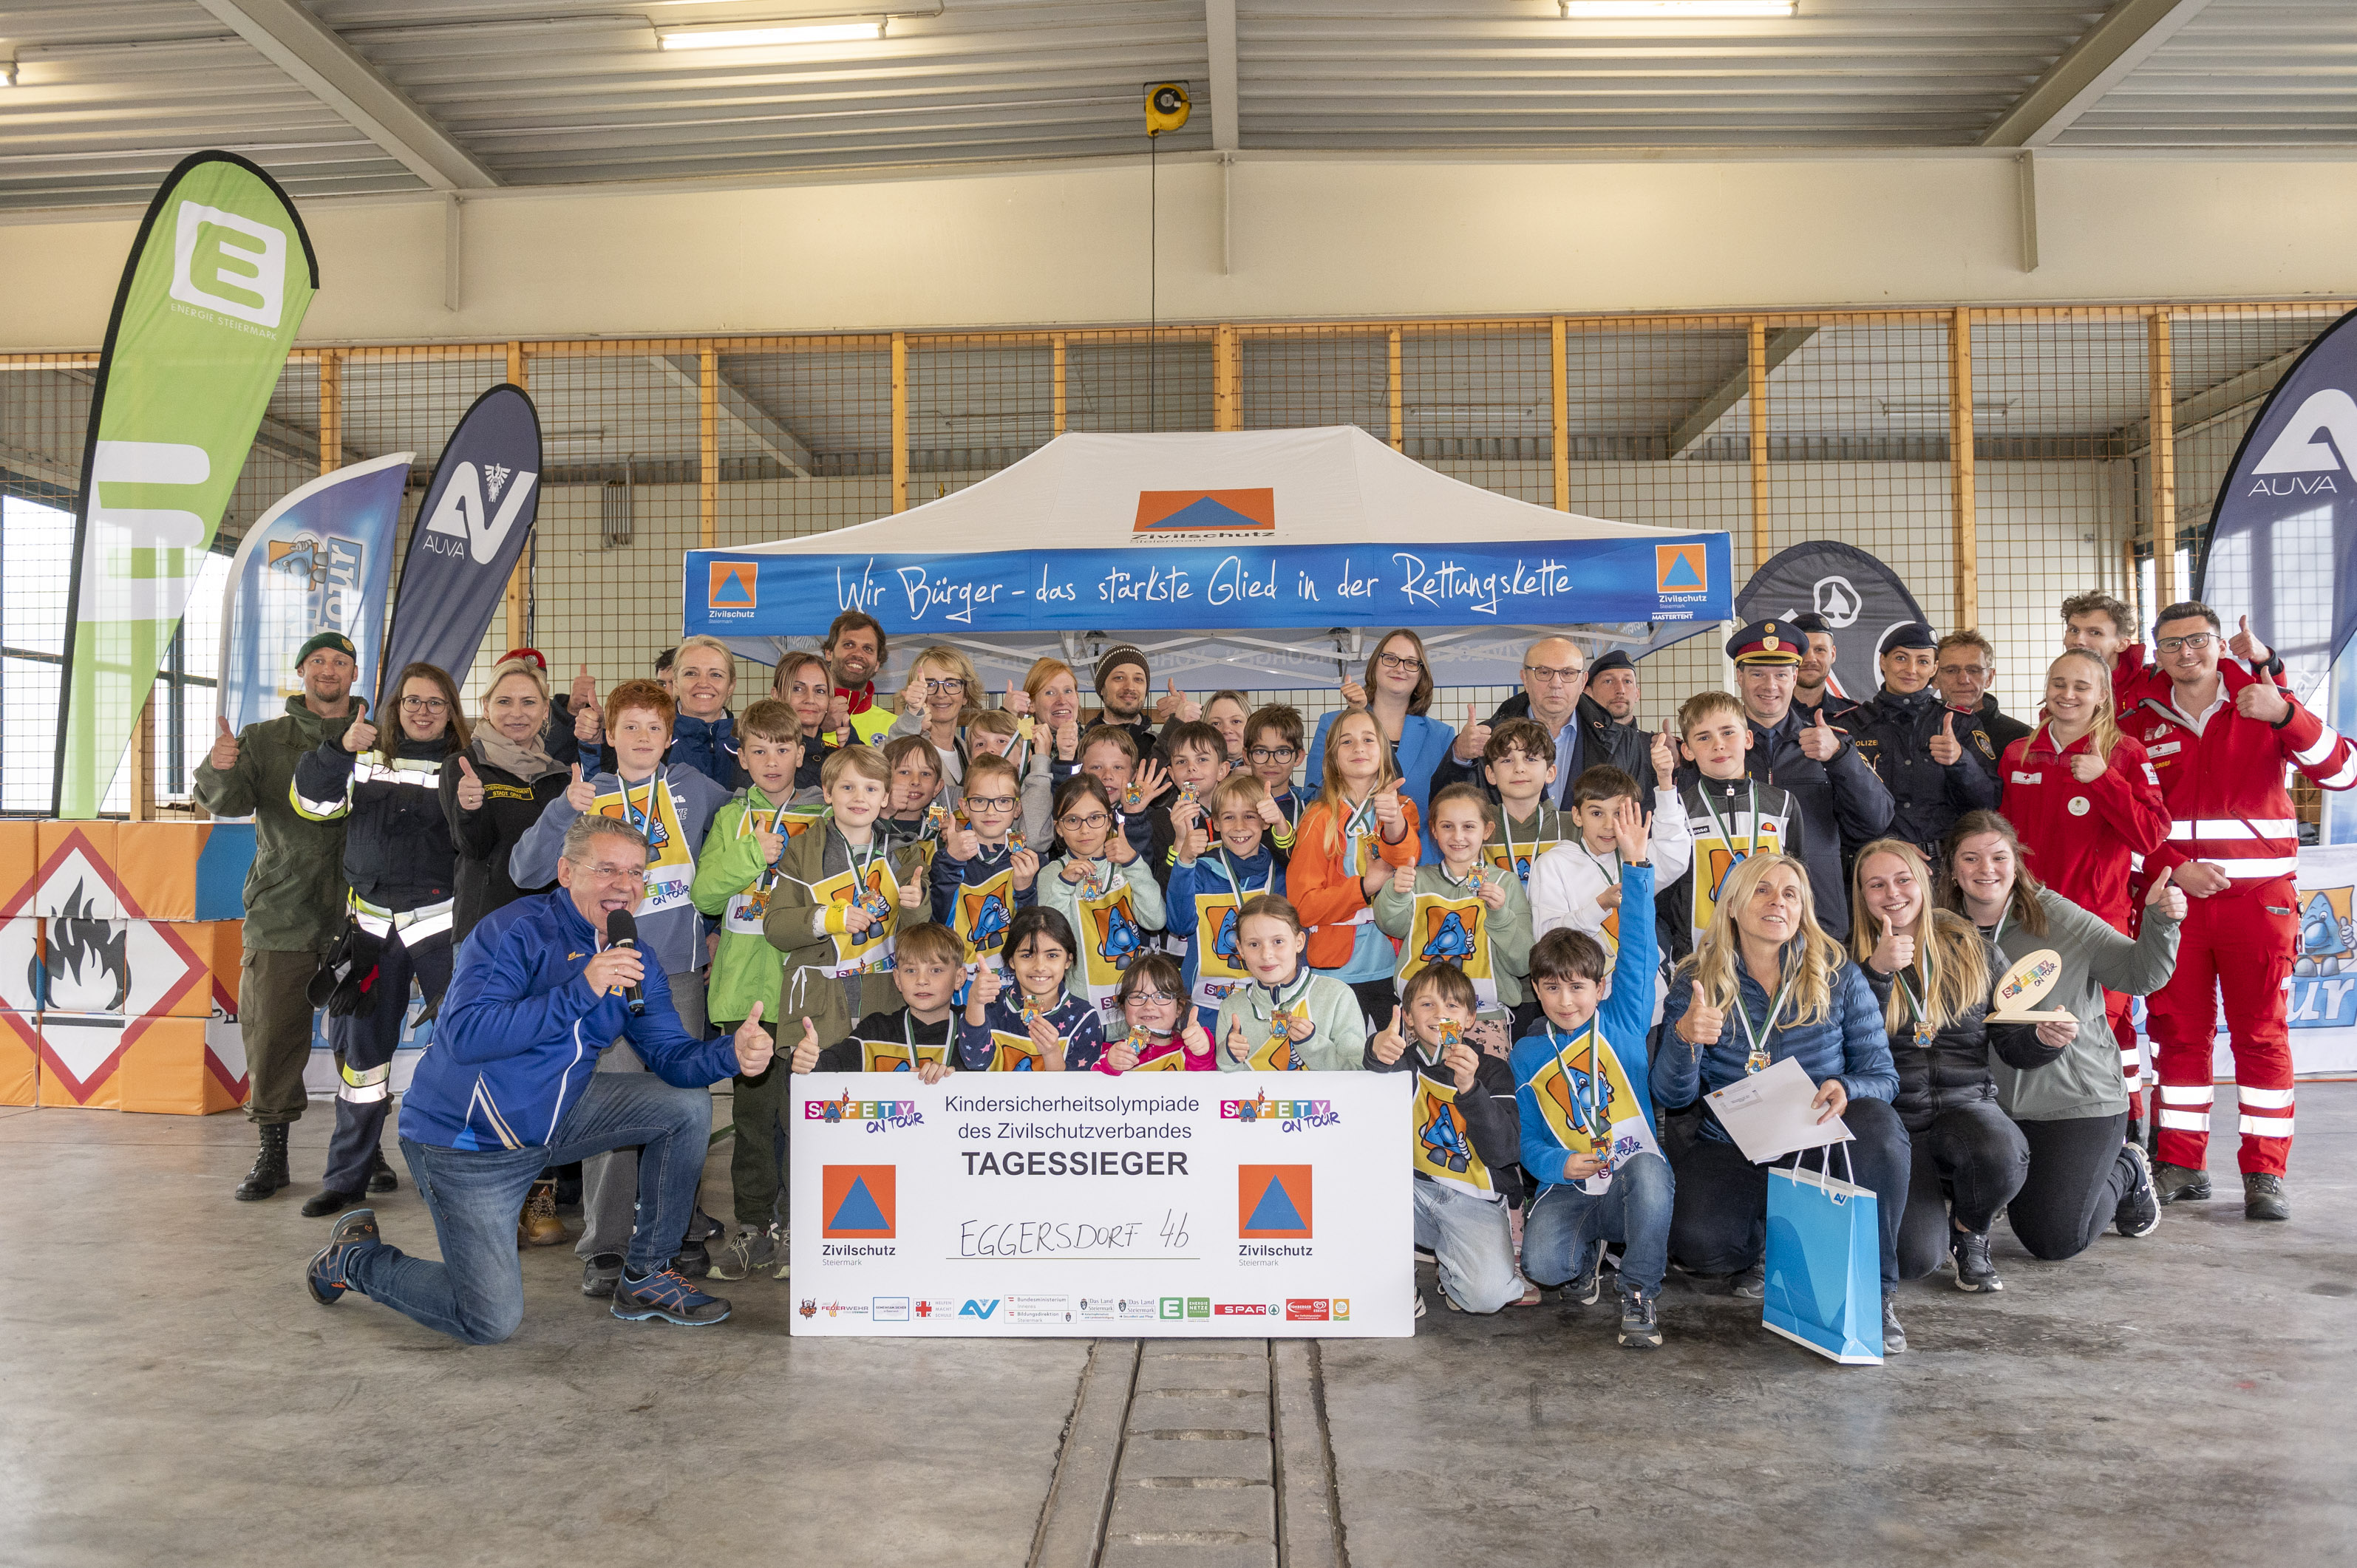 Die Sieger des ersten Tages der Kindersicherheitsolympiade in Graz: Volksschule Eggersdorf, 4b